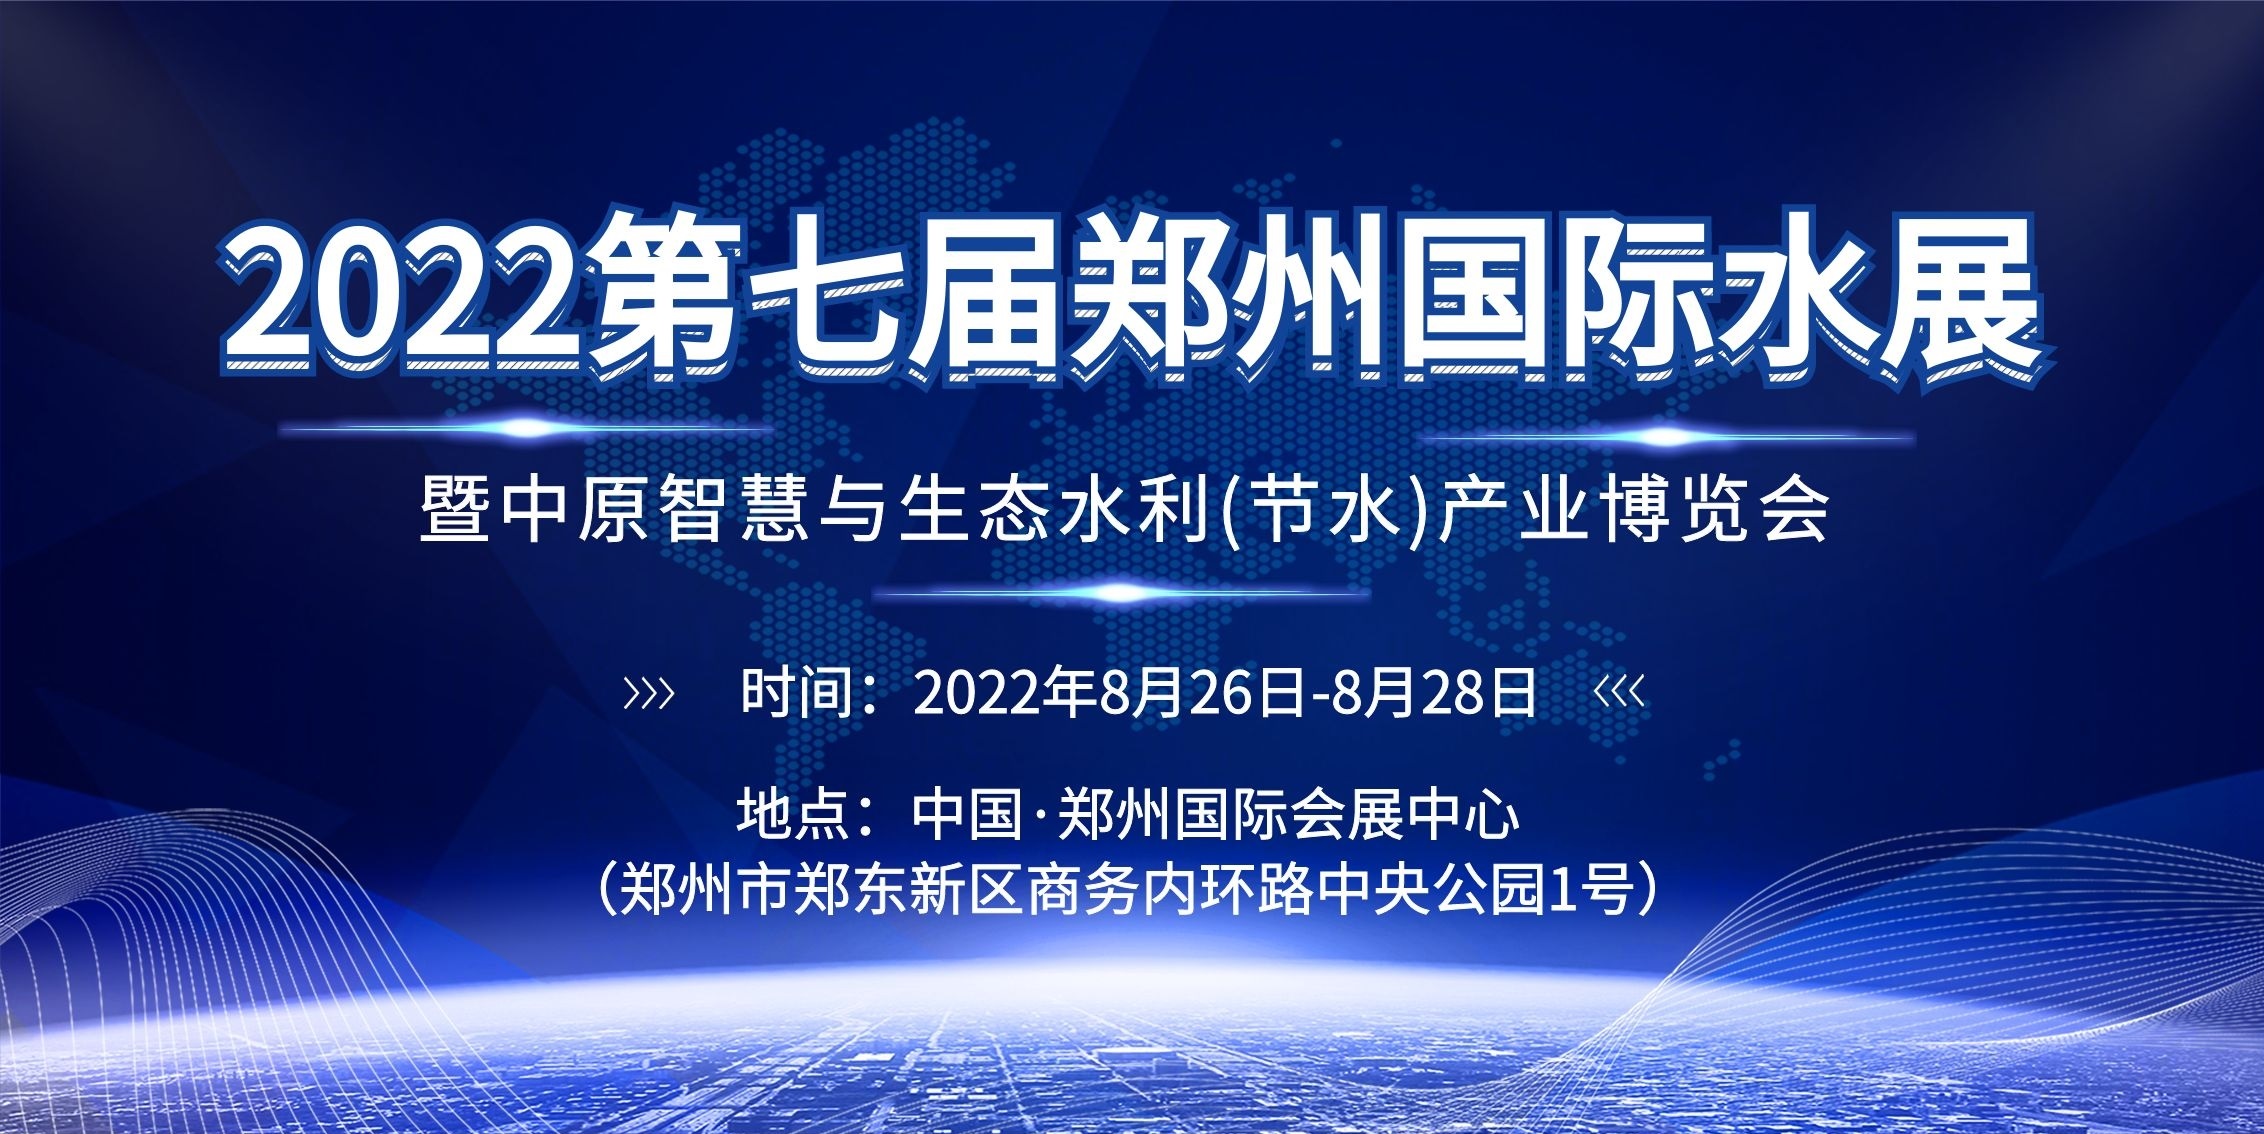 2022第七届郑州国际水展(www.828i.com)